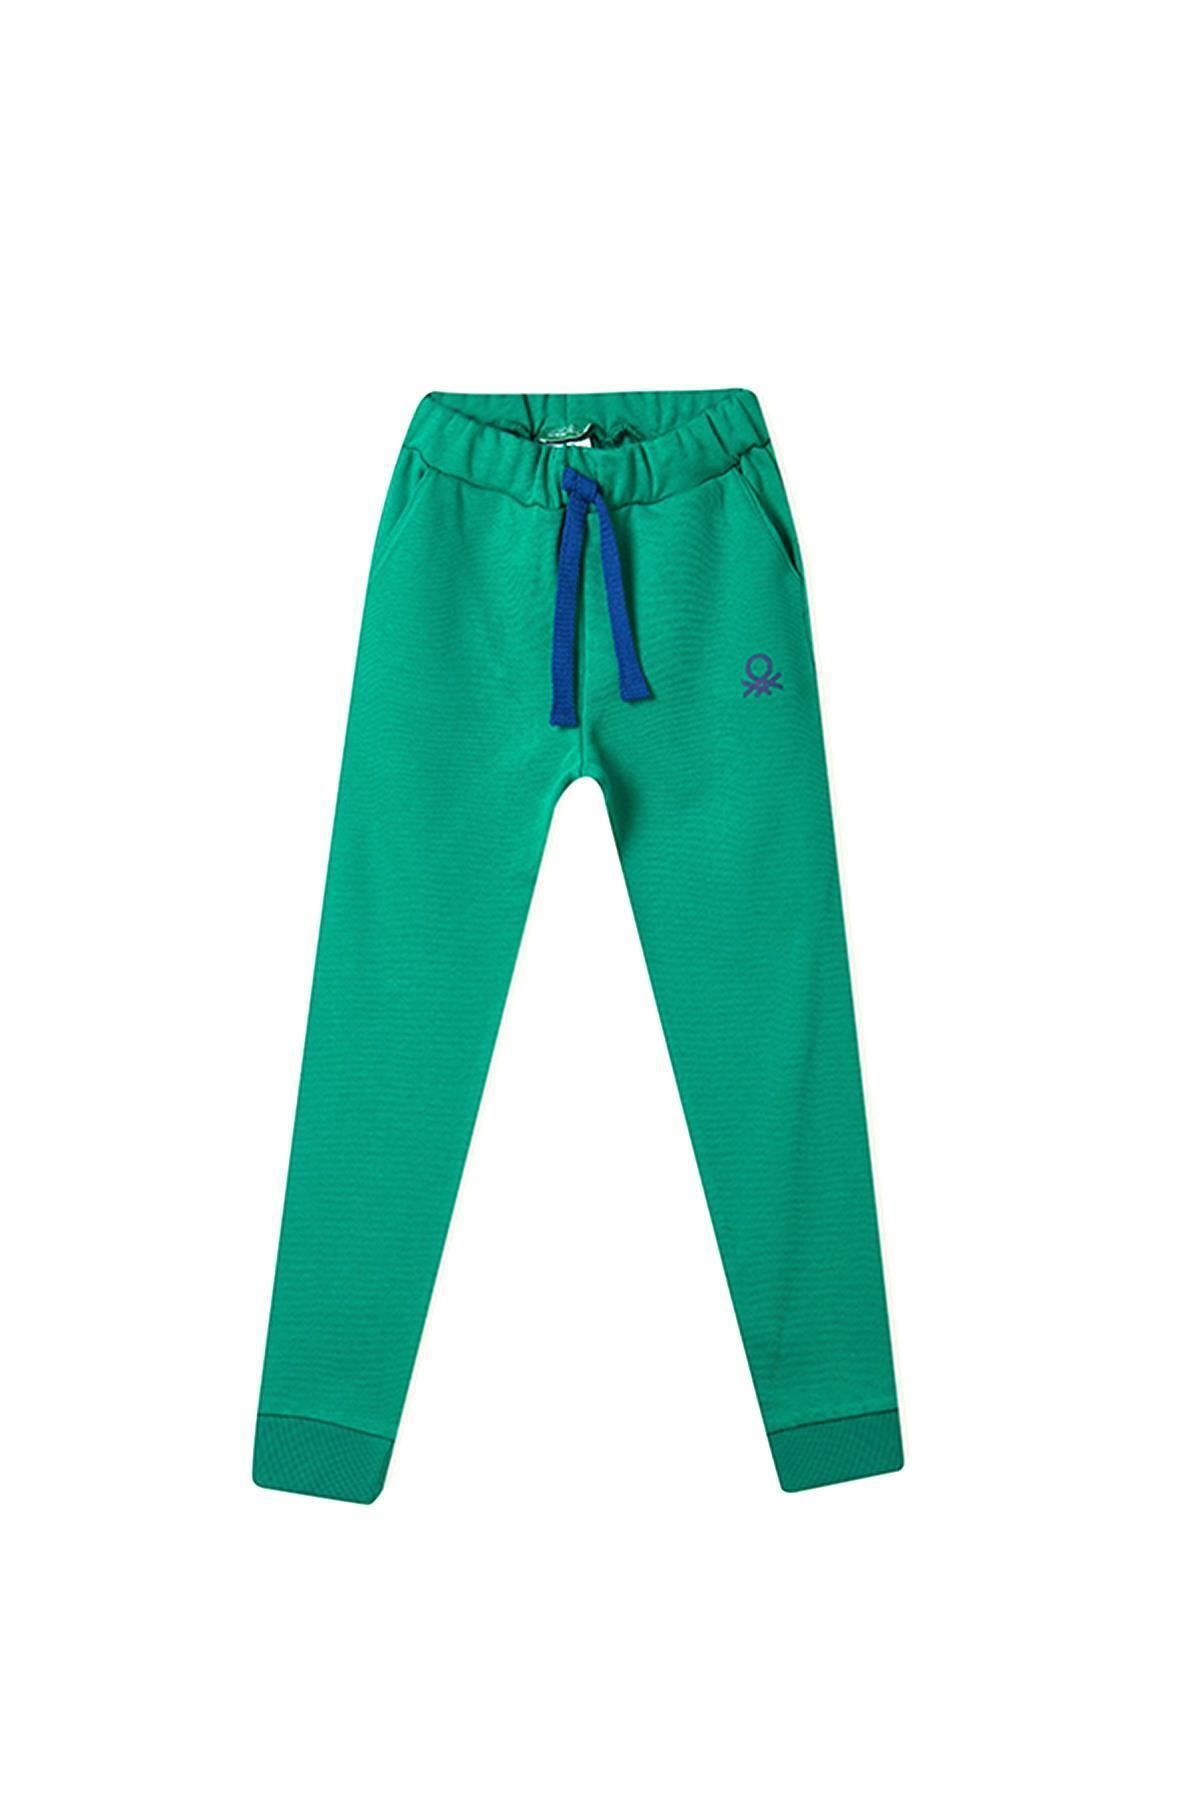 United Colors of Benetton Kız Çocuk Pantolon Bnt-g20121